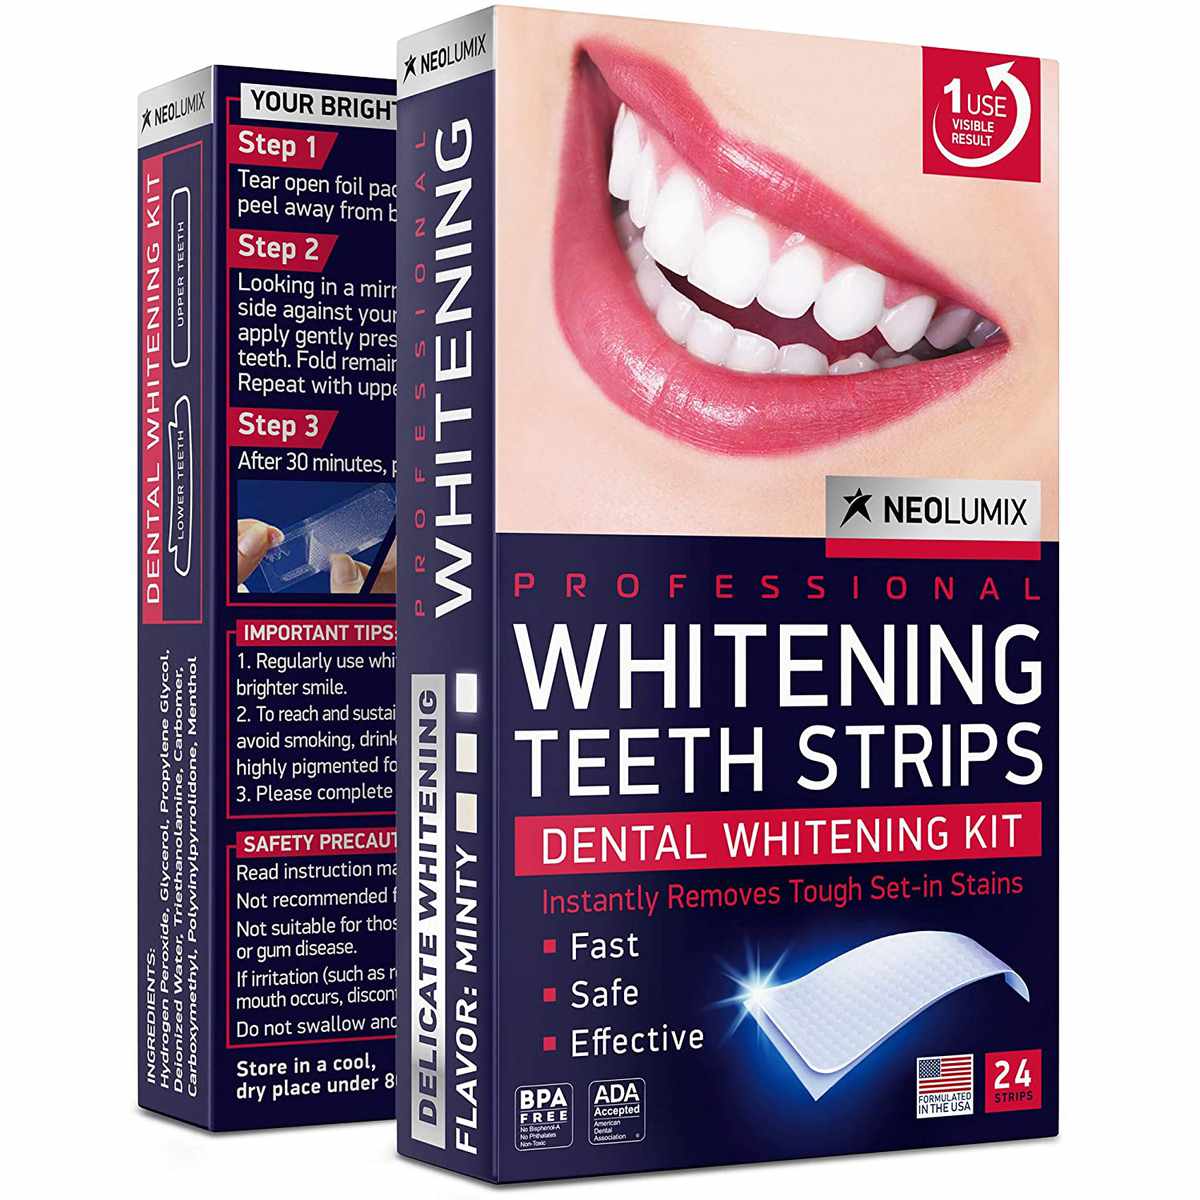 Teeth Whitening Kits on Amazon